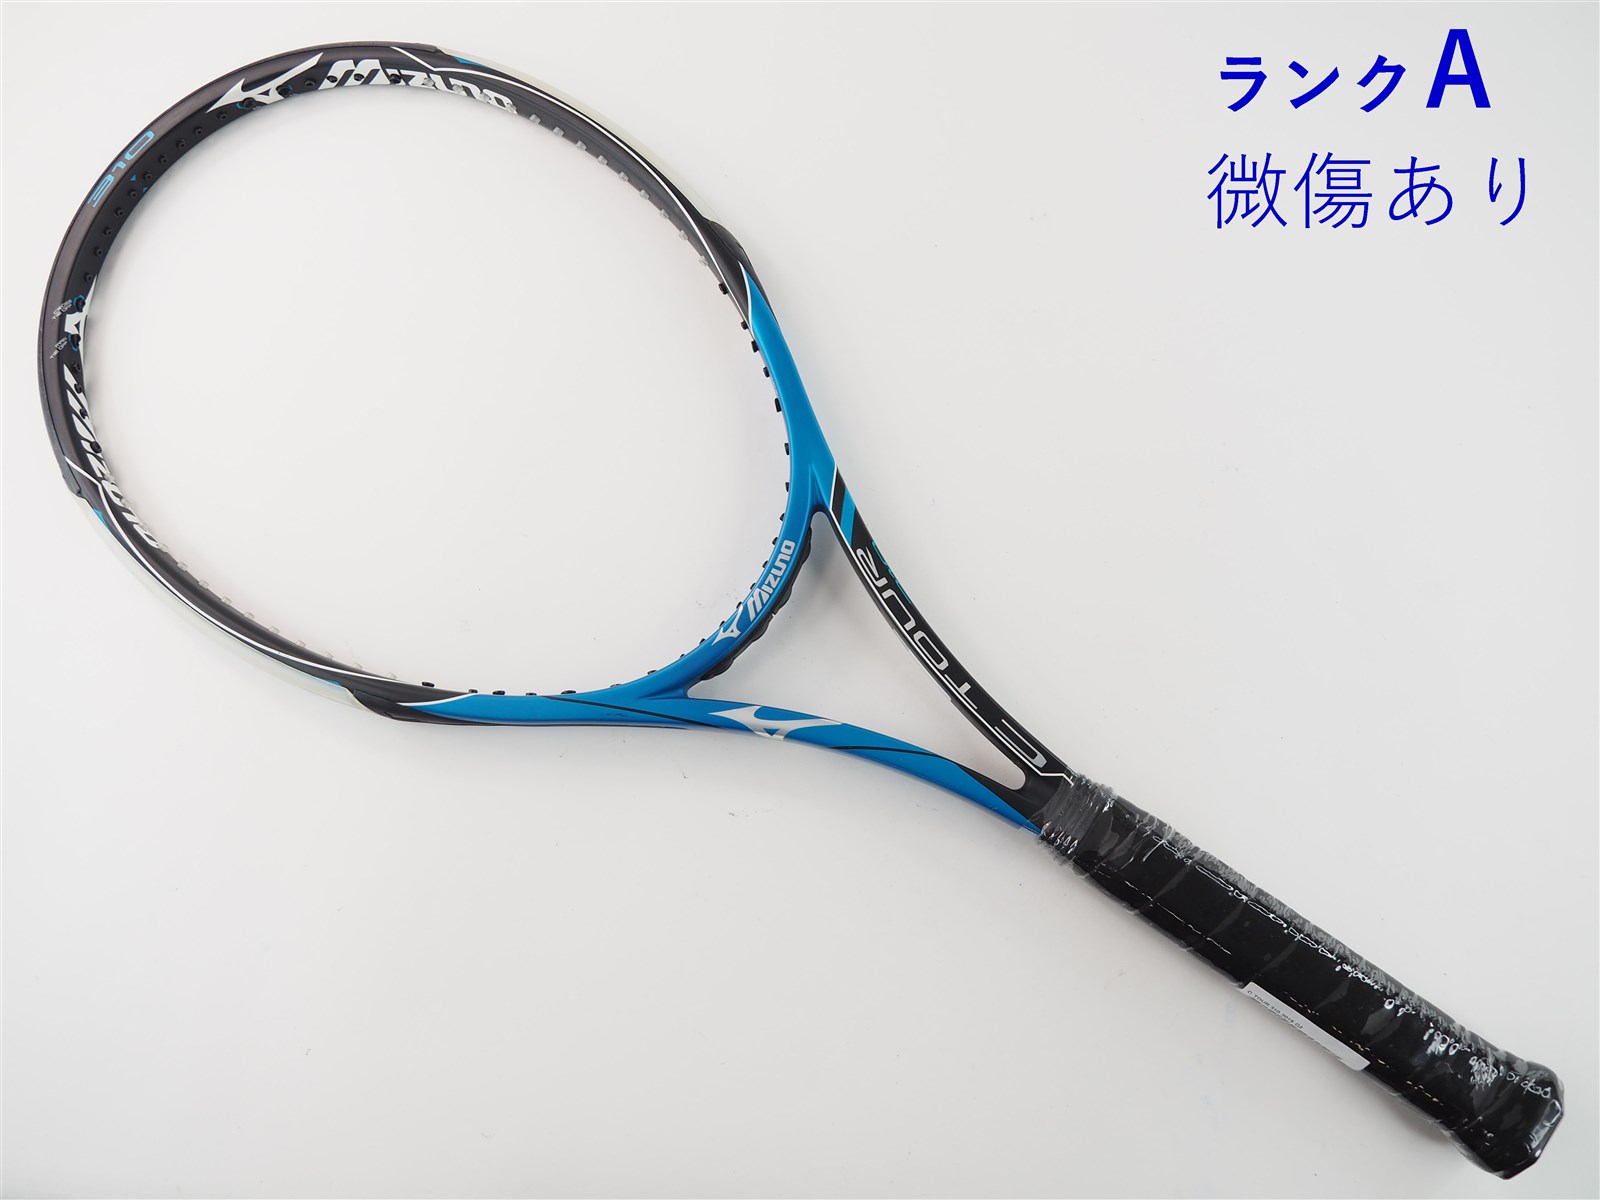 テニスラケット ミズノ C ツアー 310 2016年モデル (G2)MIZUNO C TOUR 310 2016